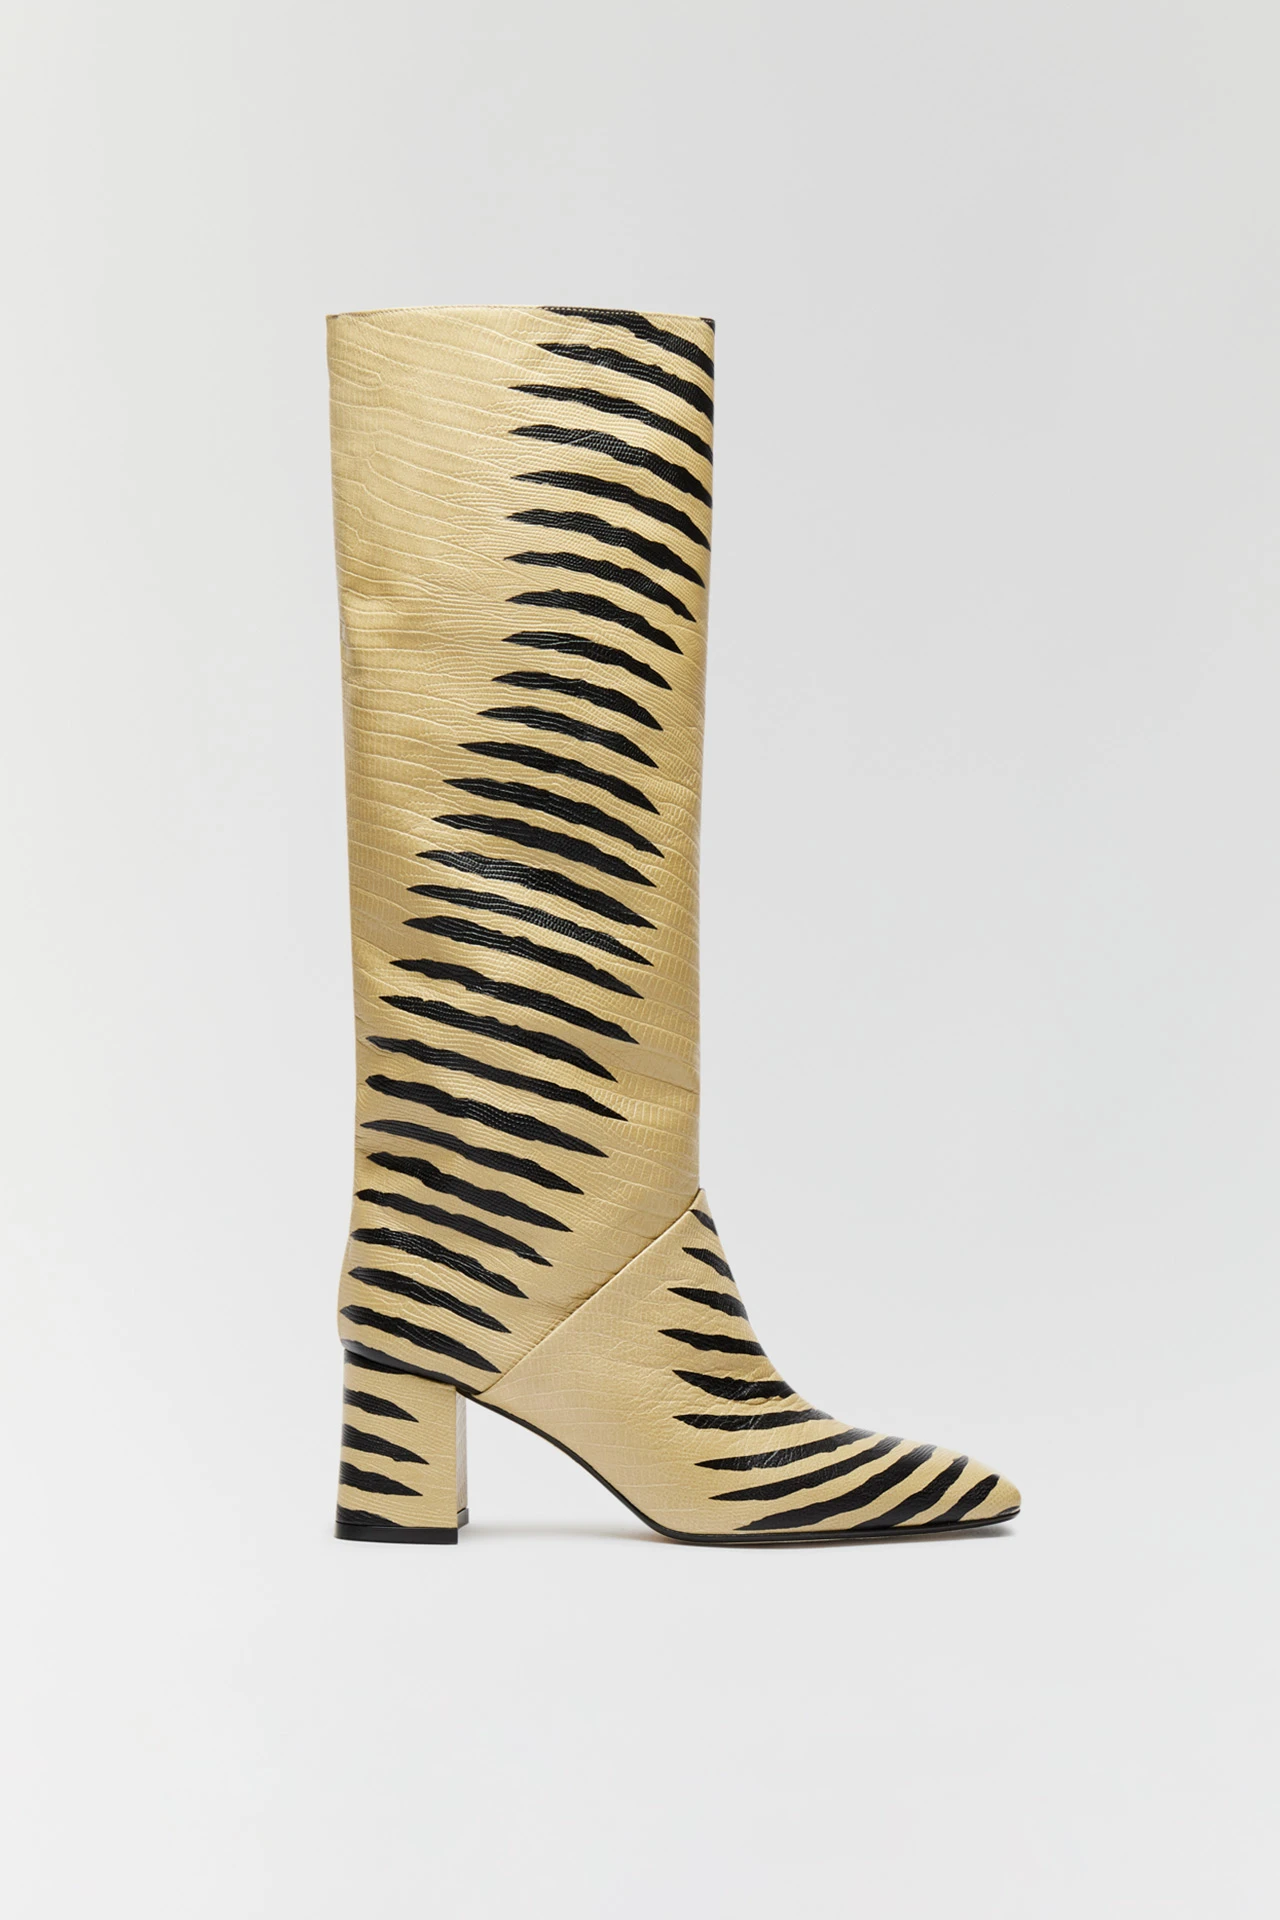 miista-finola-camel-black-cebra-print-tall-boots-1